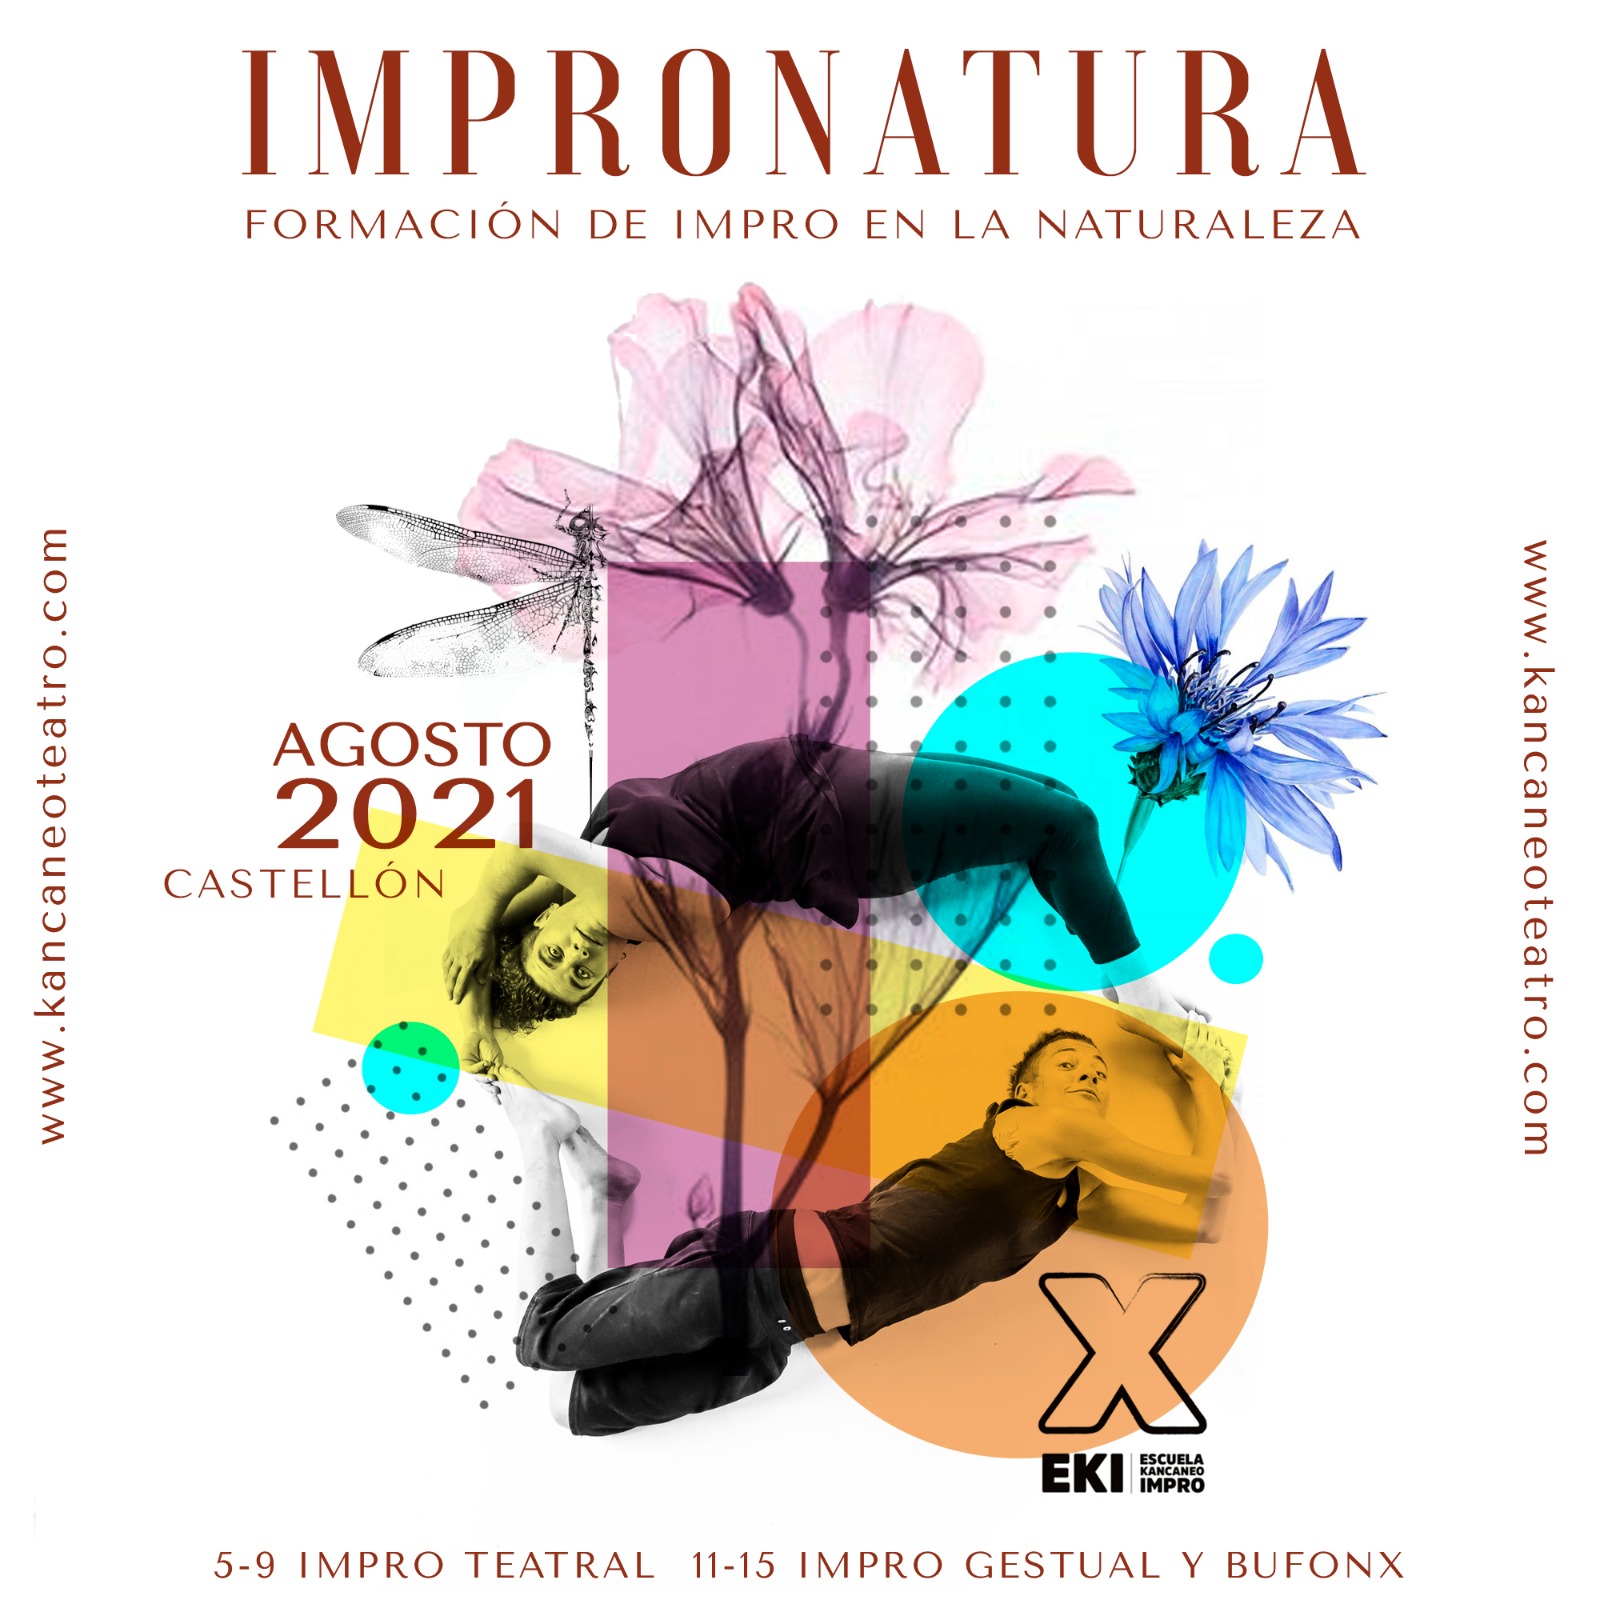 Impronatura -Formación- Improvisación teatral  -Escuela Kancaneo Teatro